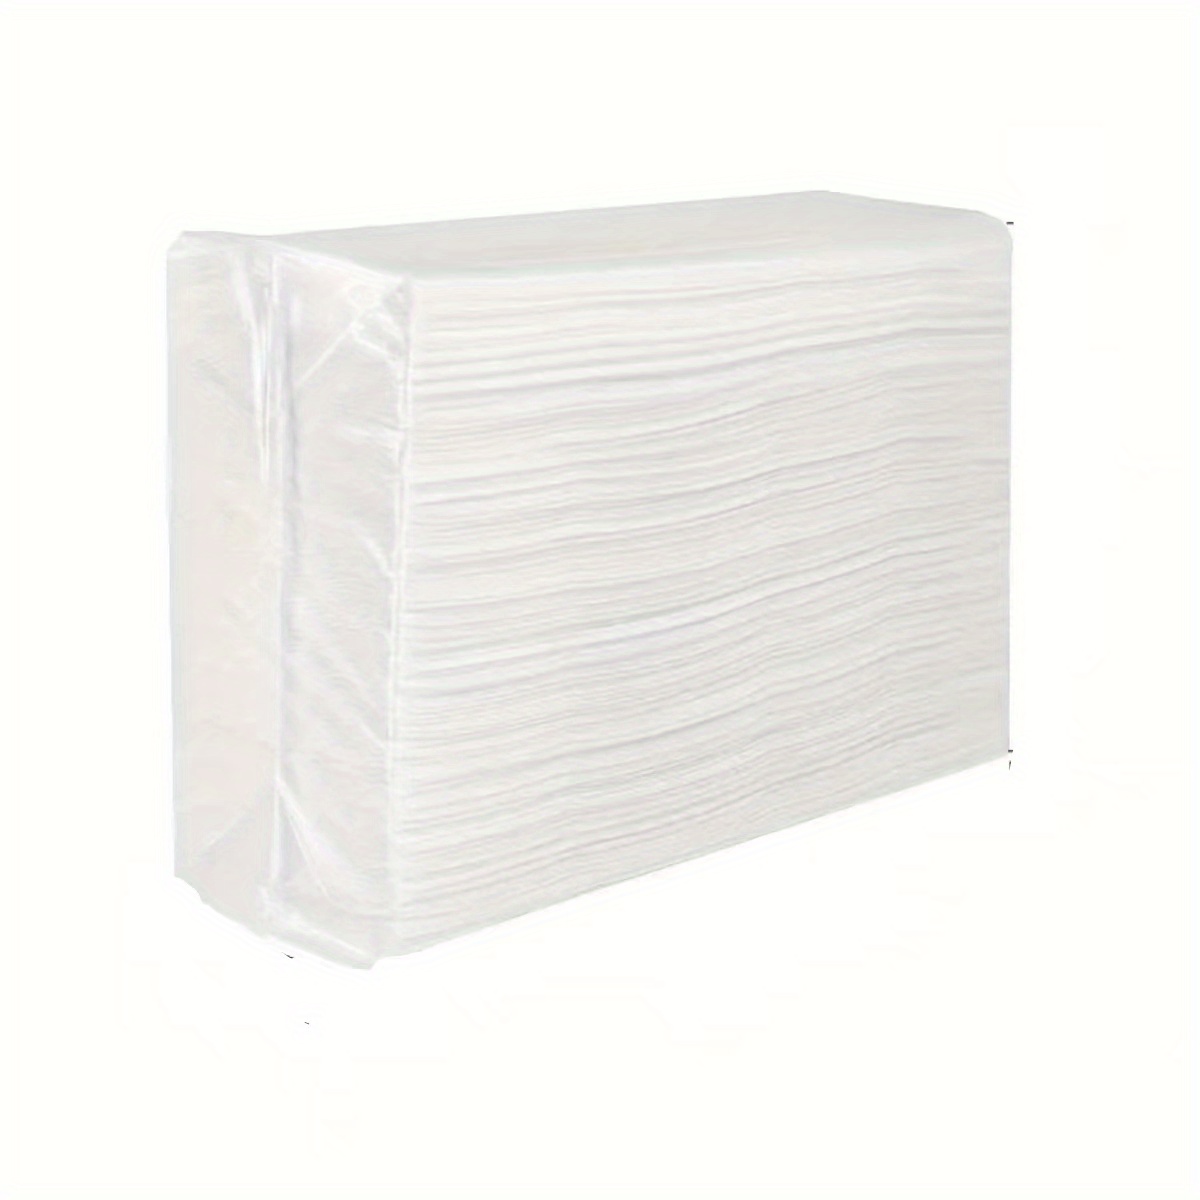  NC Toallas de papel higiénico Hotel Rollo grande de papel  comercial Caja completa Restaurante Papel higiénico Hogar Papel higiénico  grande : Todo lo demás